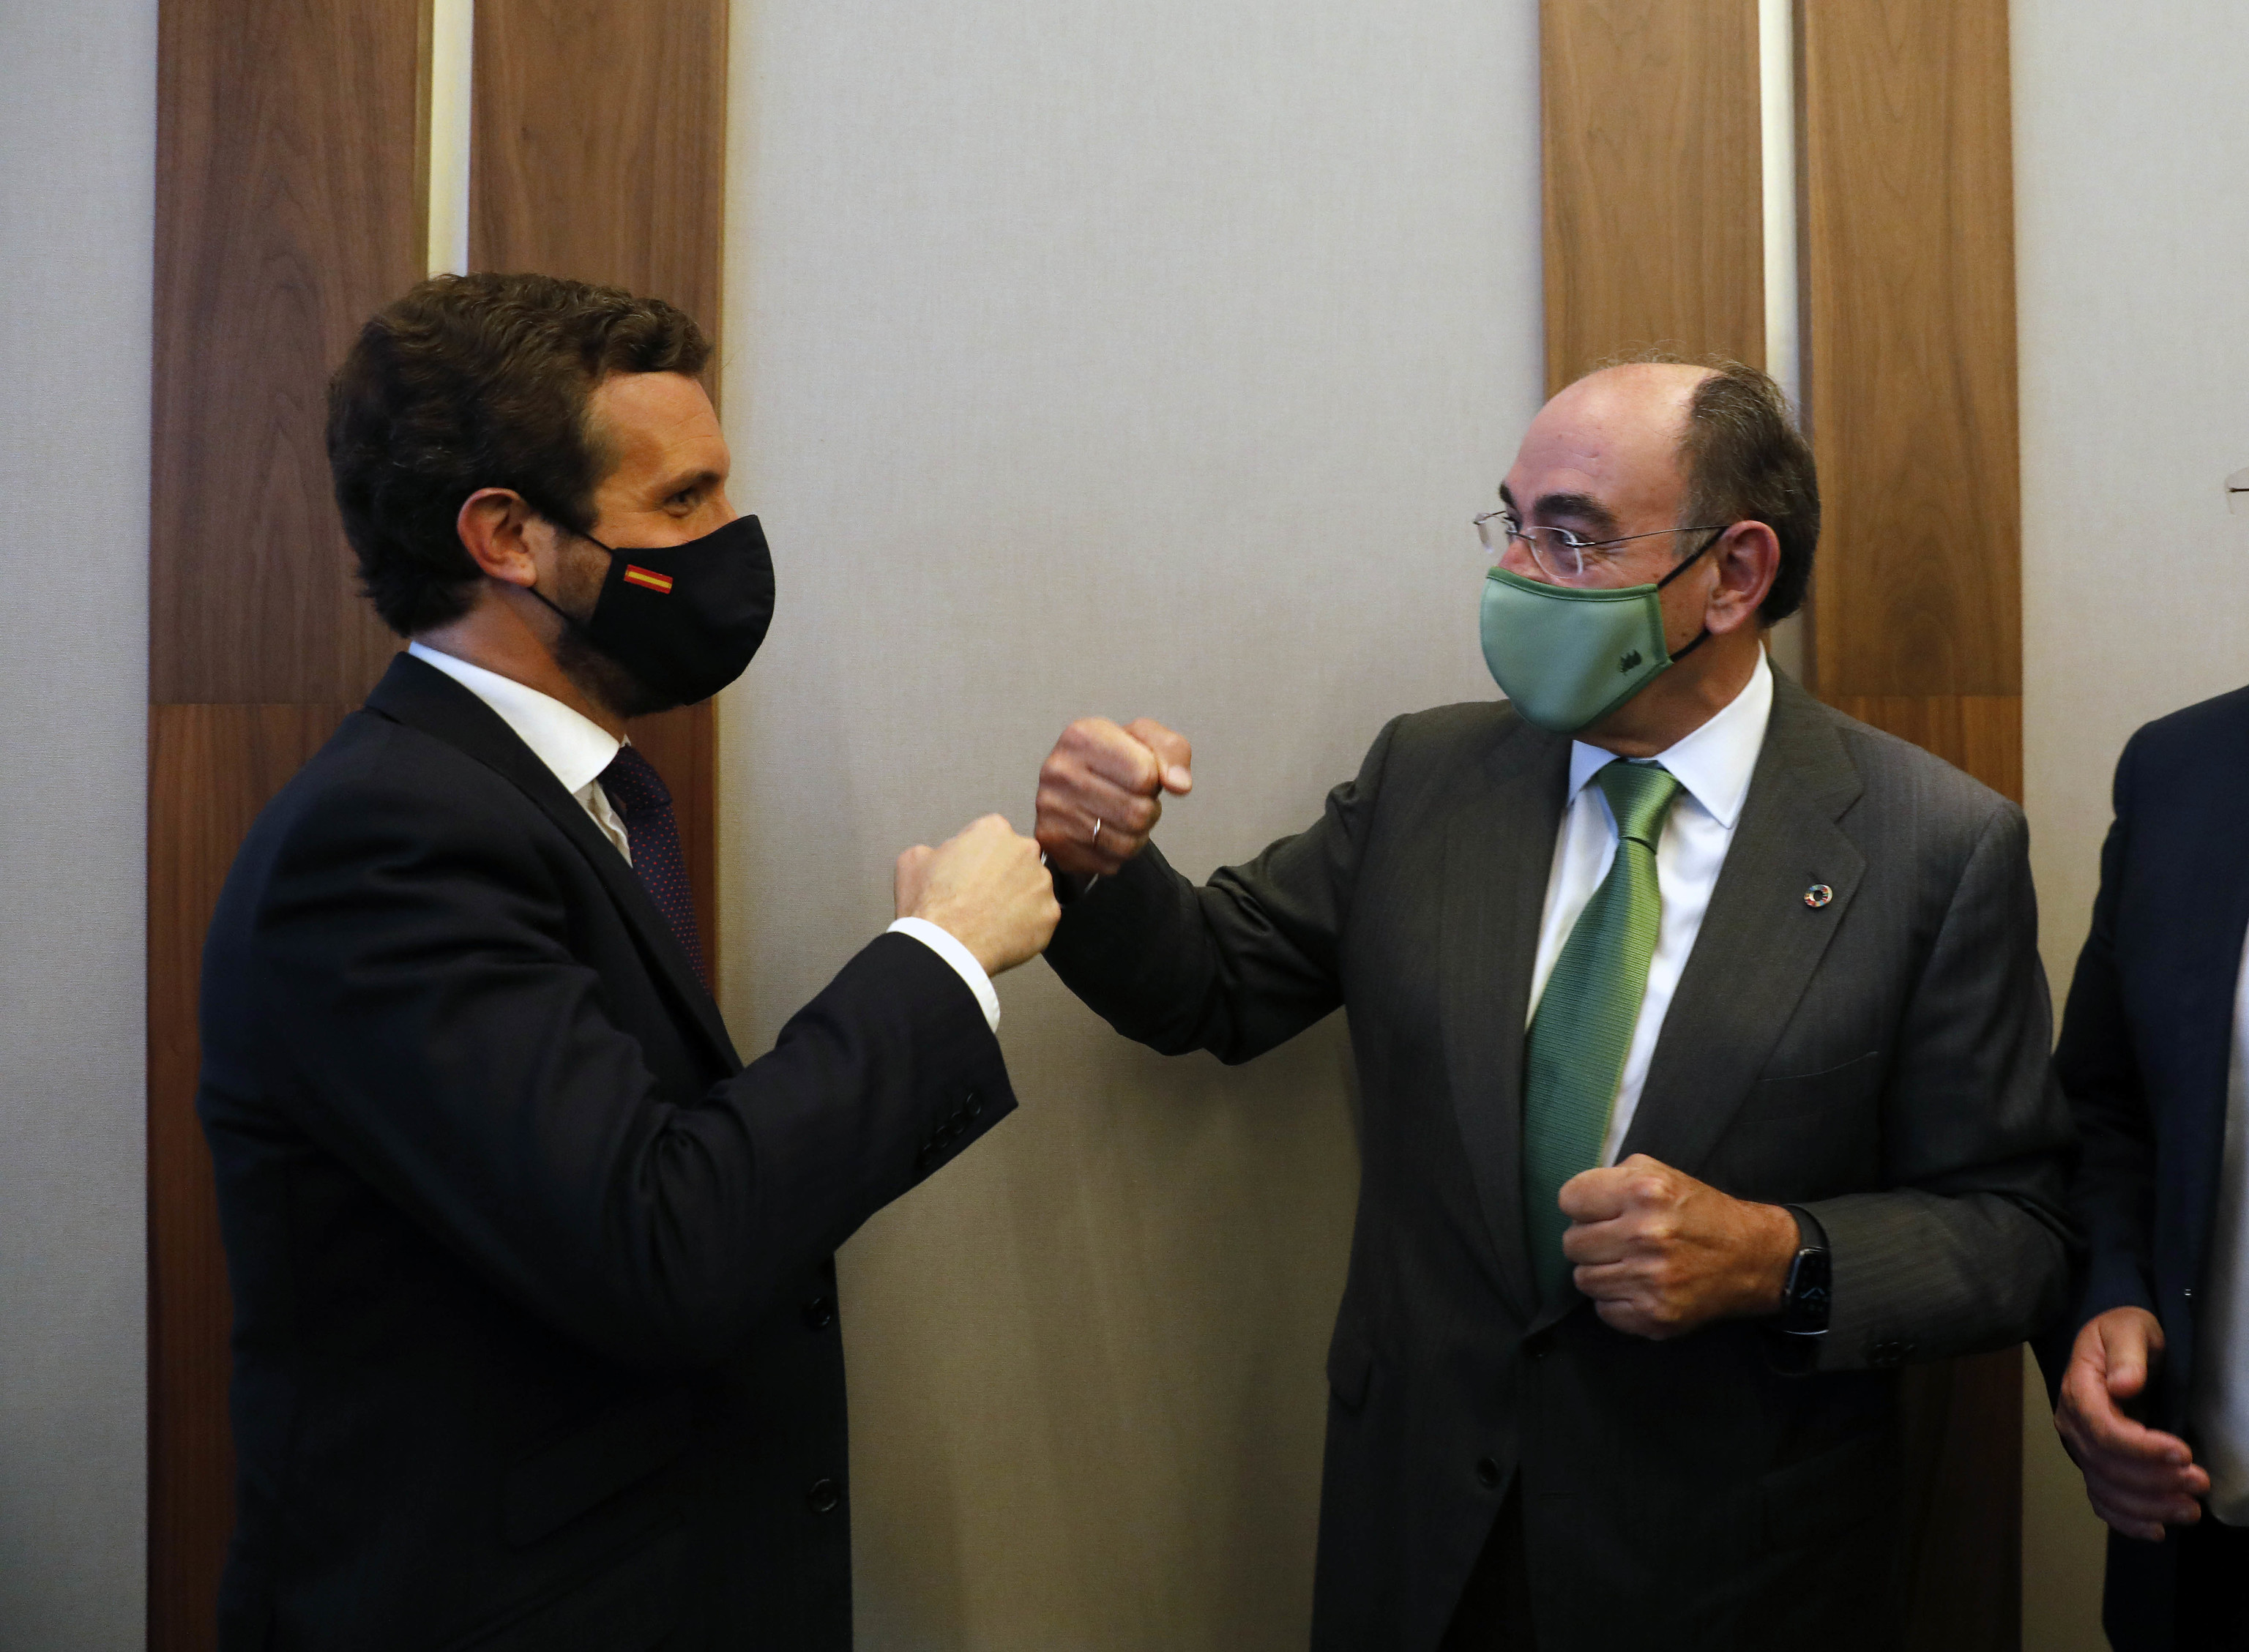 Pablo Casado e Ignacio Snchez Galn se saludan durante una conferencia poltica celebrada en Madrid.